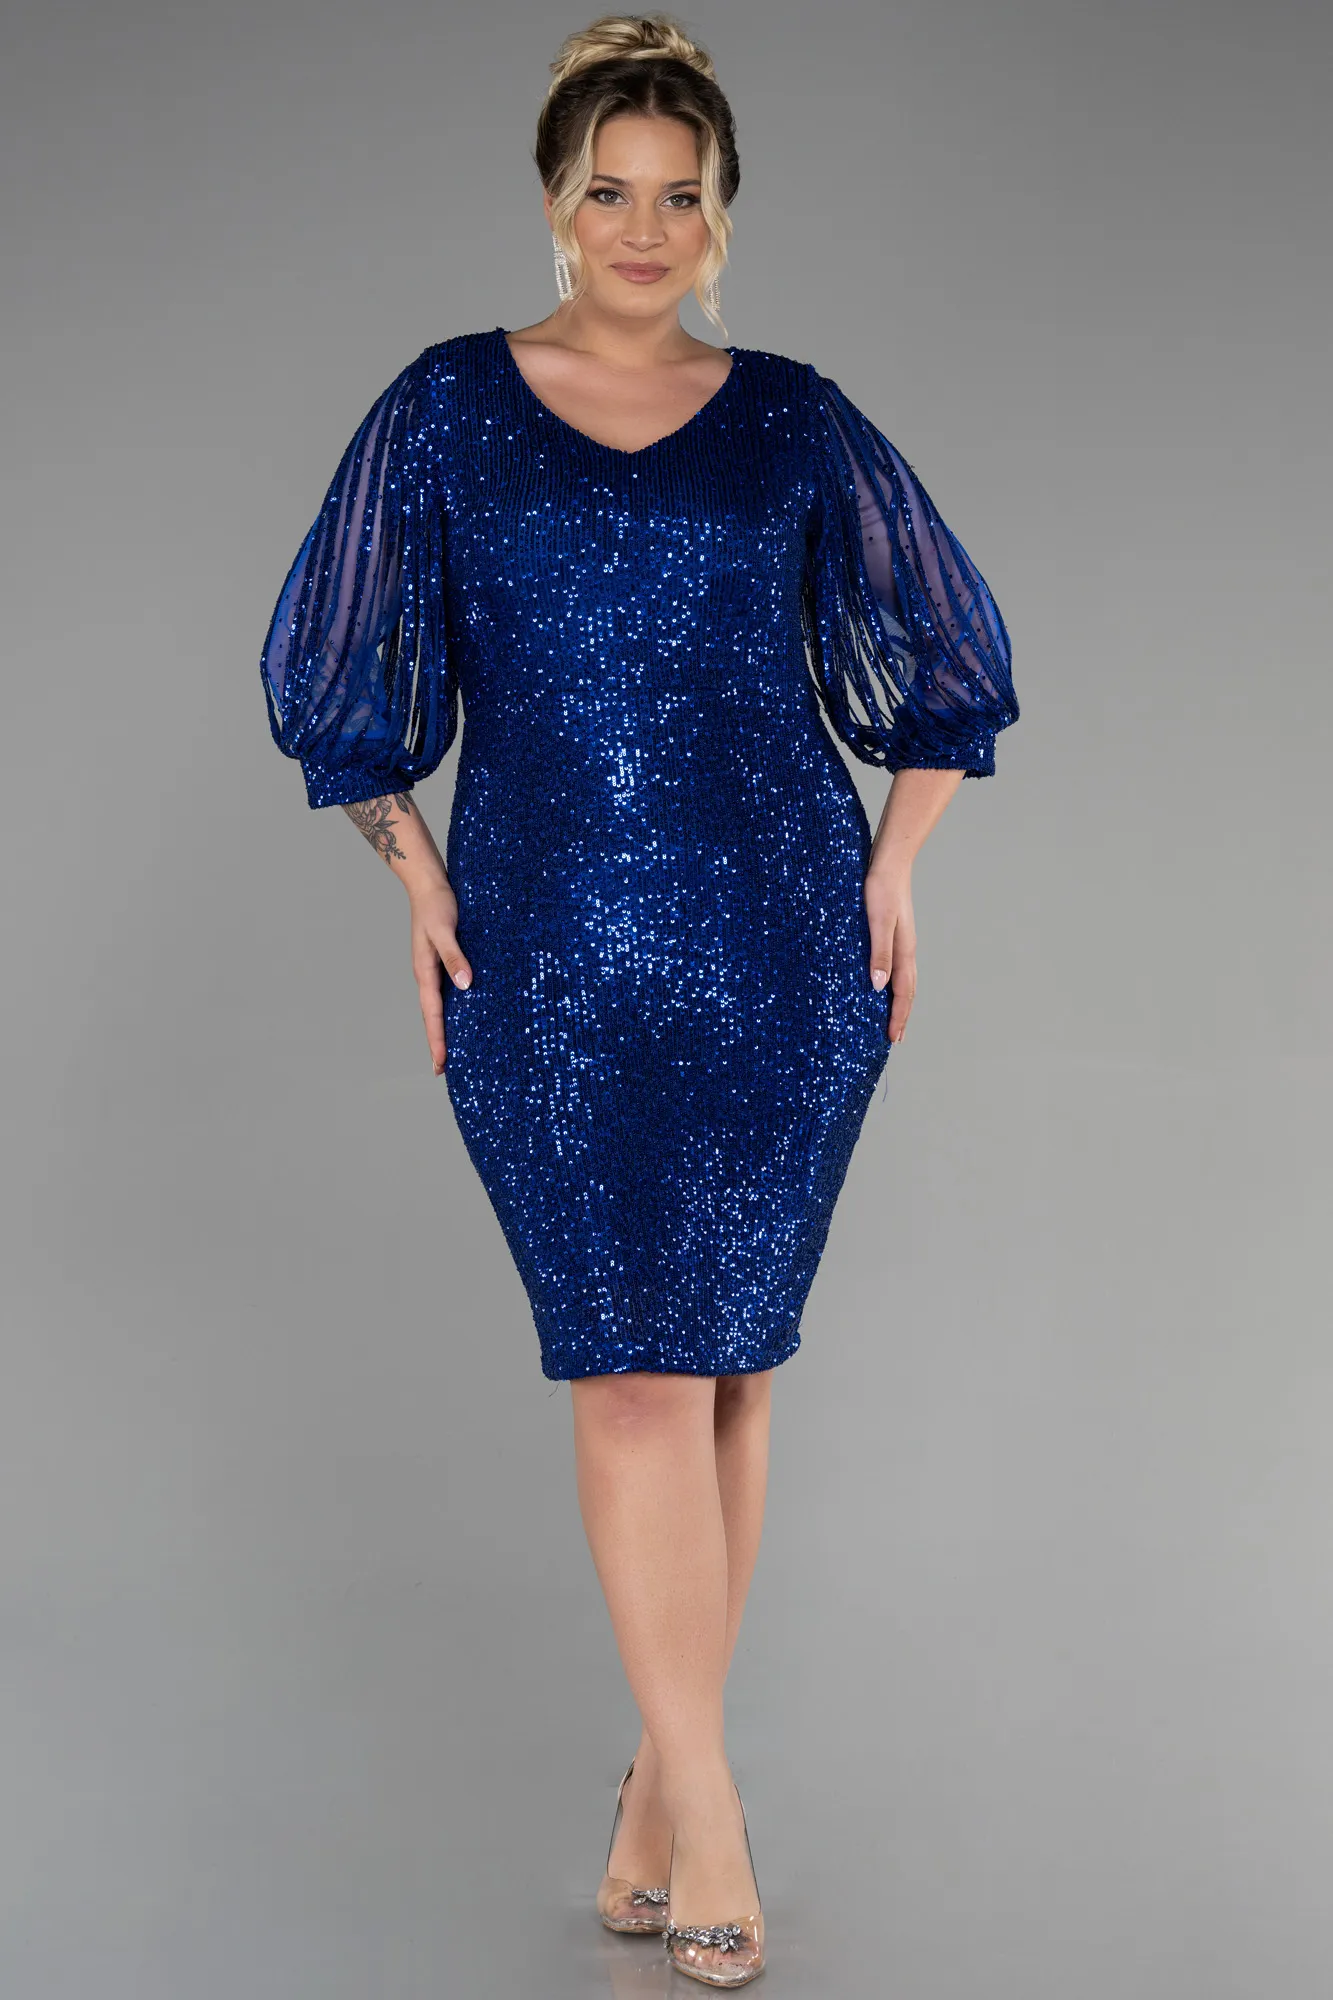 Sax Blue-Short Plus Size Evening Dress ABK631